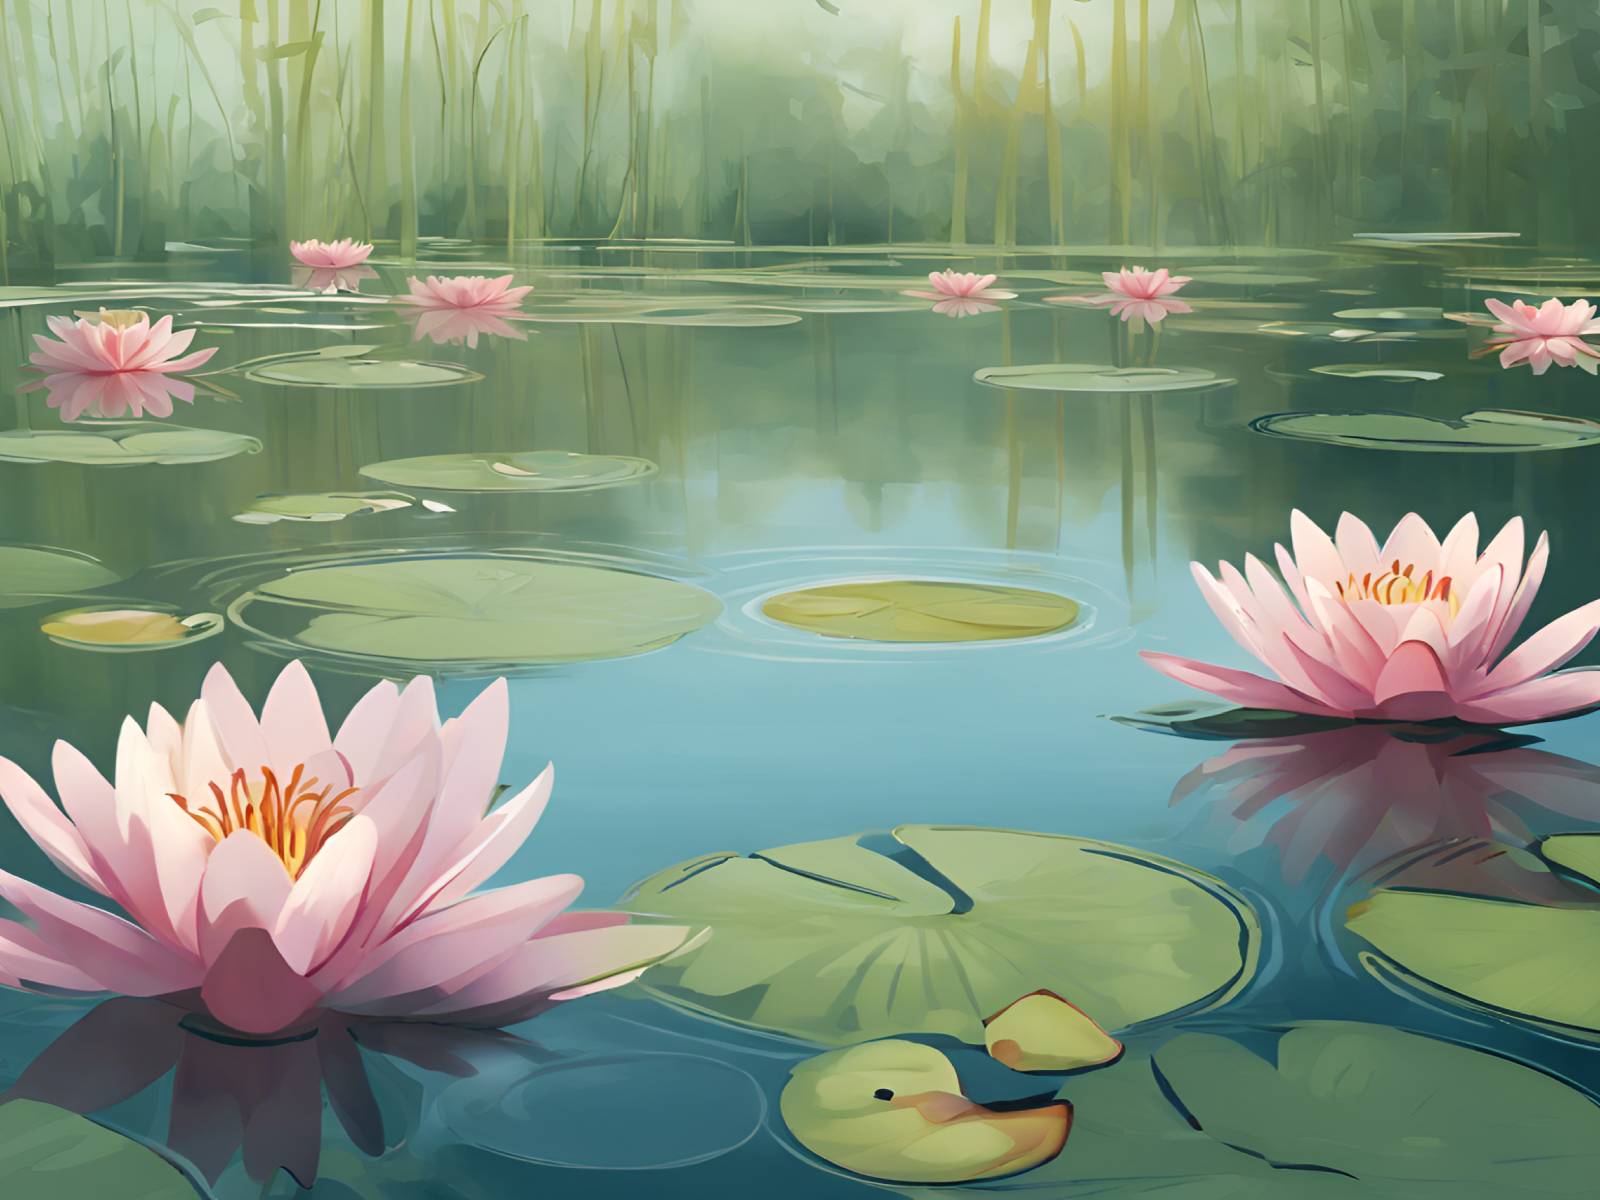 diamonds-wizard-diamond-painting-kits-Nature-Flower-Lily-Pond-Serenity-original.jpg